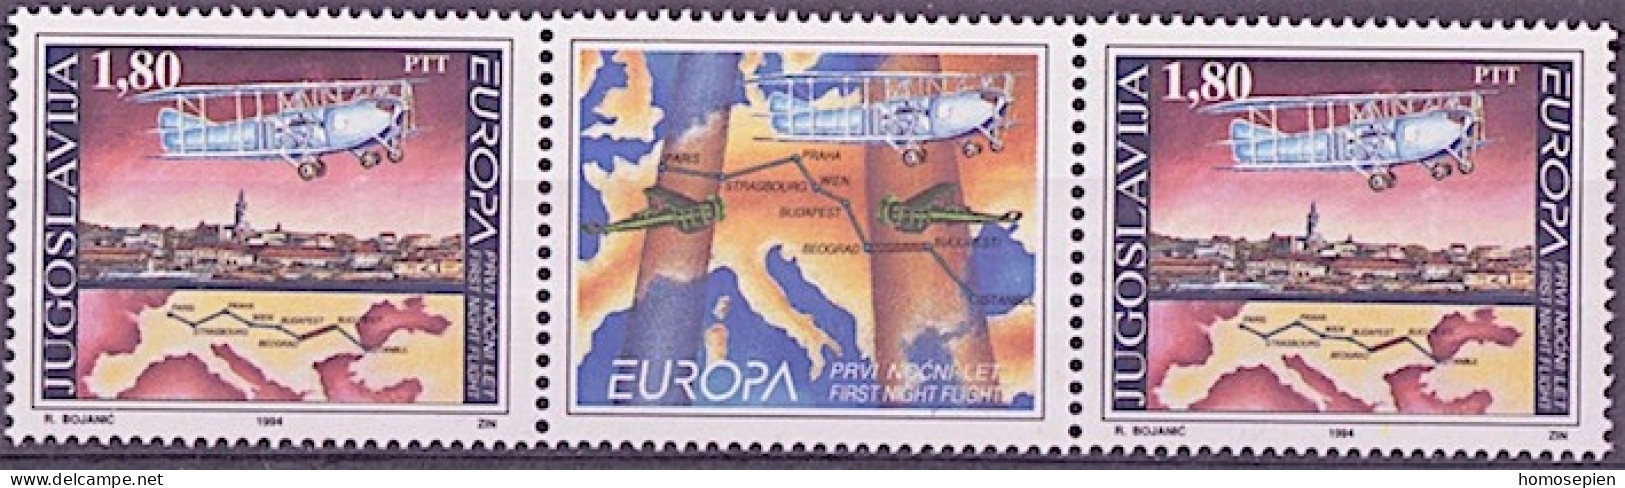 Yougoslavie - Jugoslawien - Yugoslavia 1994 Y&T N°IP2518 - Michel N°ZW2658 *** - 1,80d EUROPA - Interpanneau - Neufs